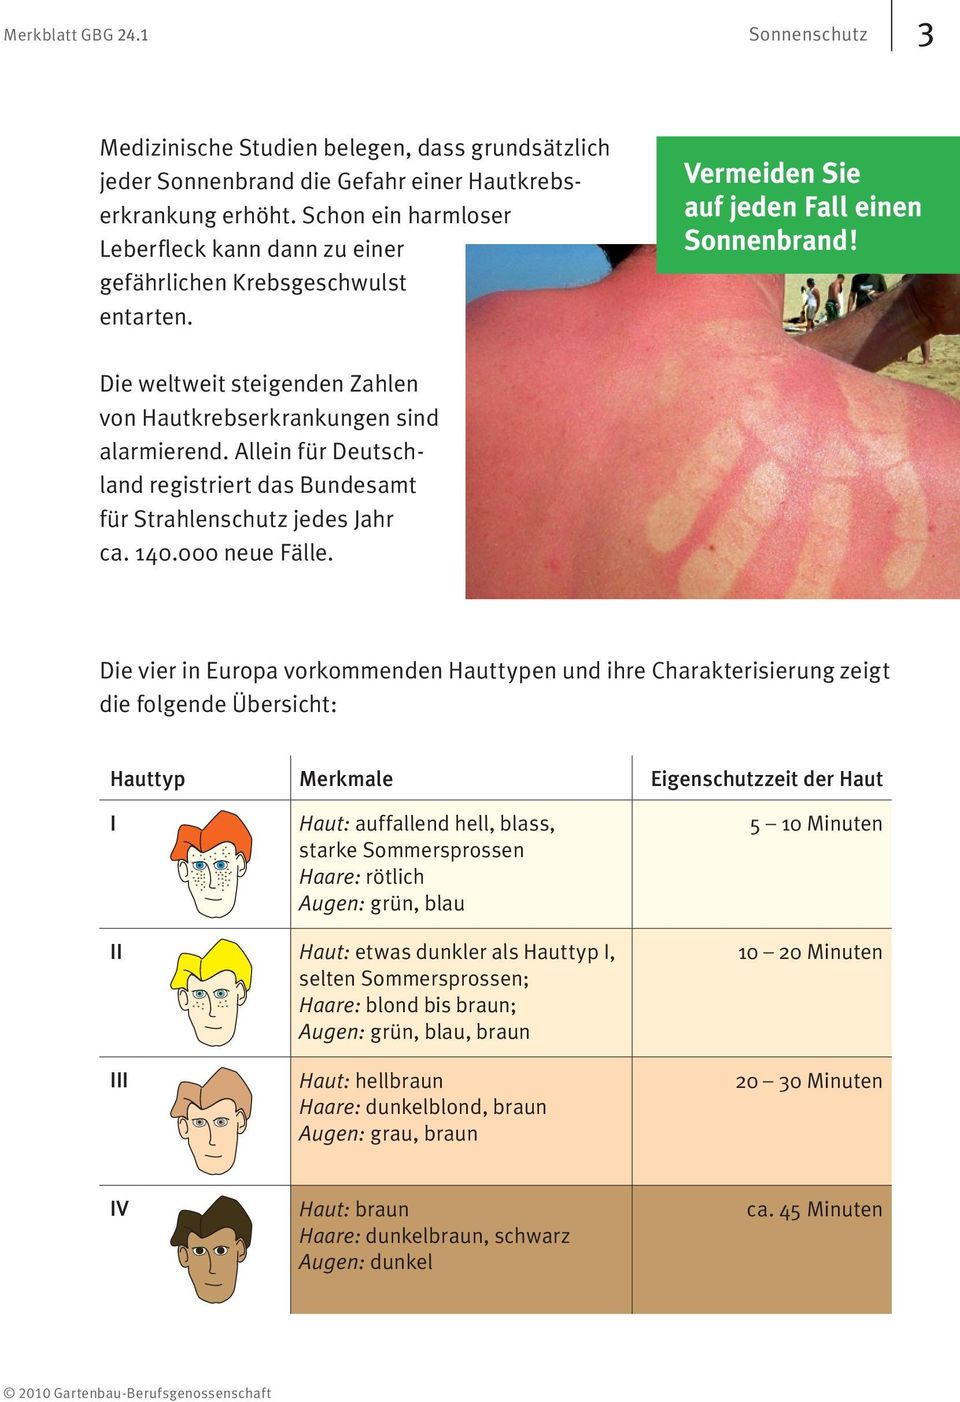 Die weltweit steigenden Zahlen von Hautkrebserkrankungen sind alarmierend. Allein für Deutschland registriert das Bundesamt für Strahlenschutz jedes Jahr ca. 140.000 neue Fälle.